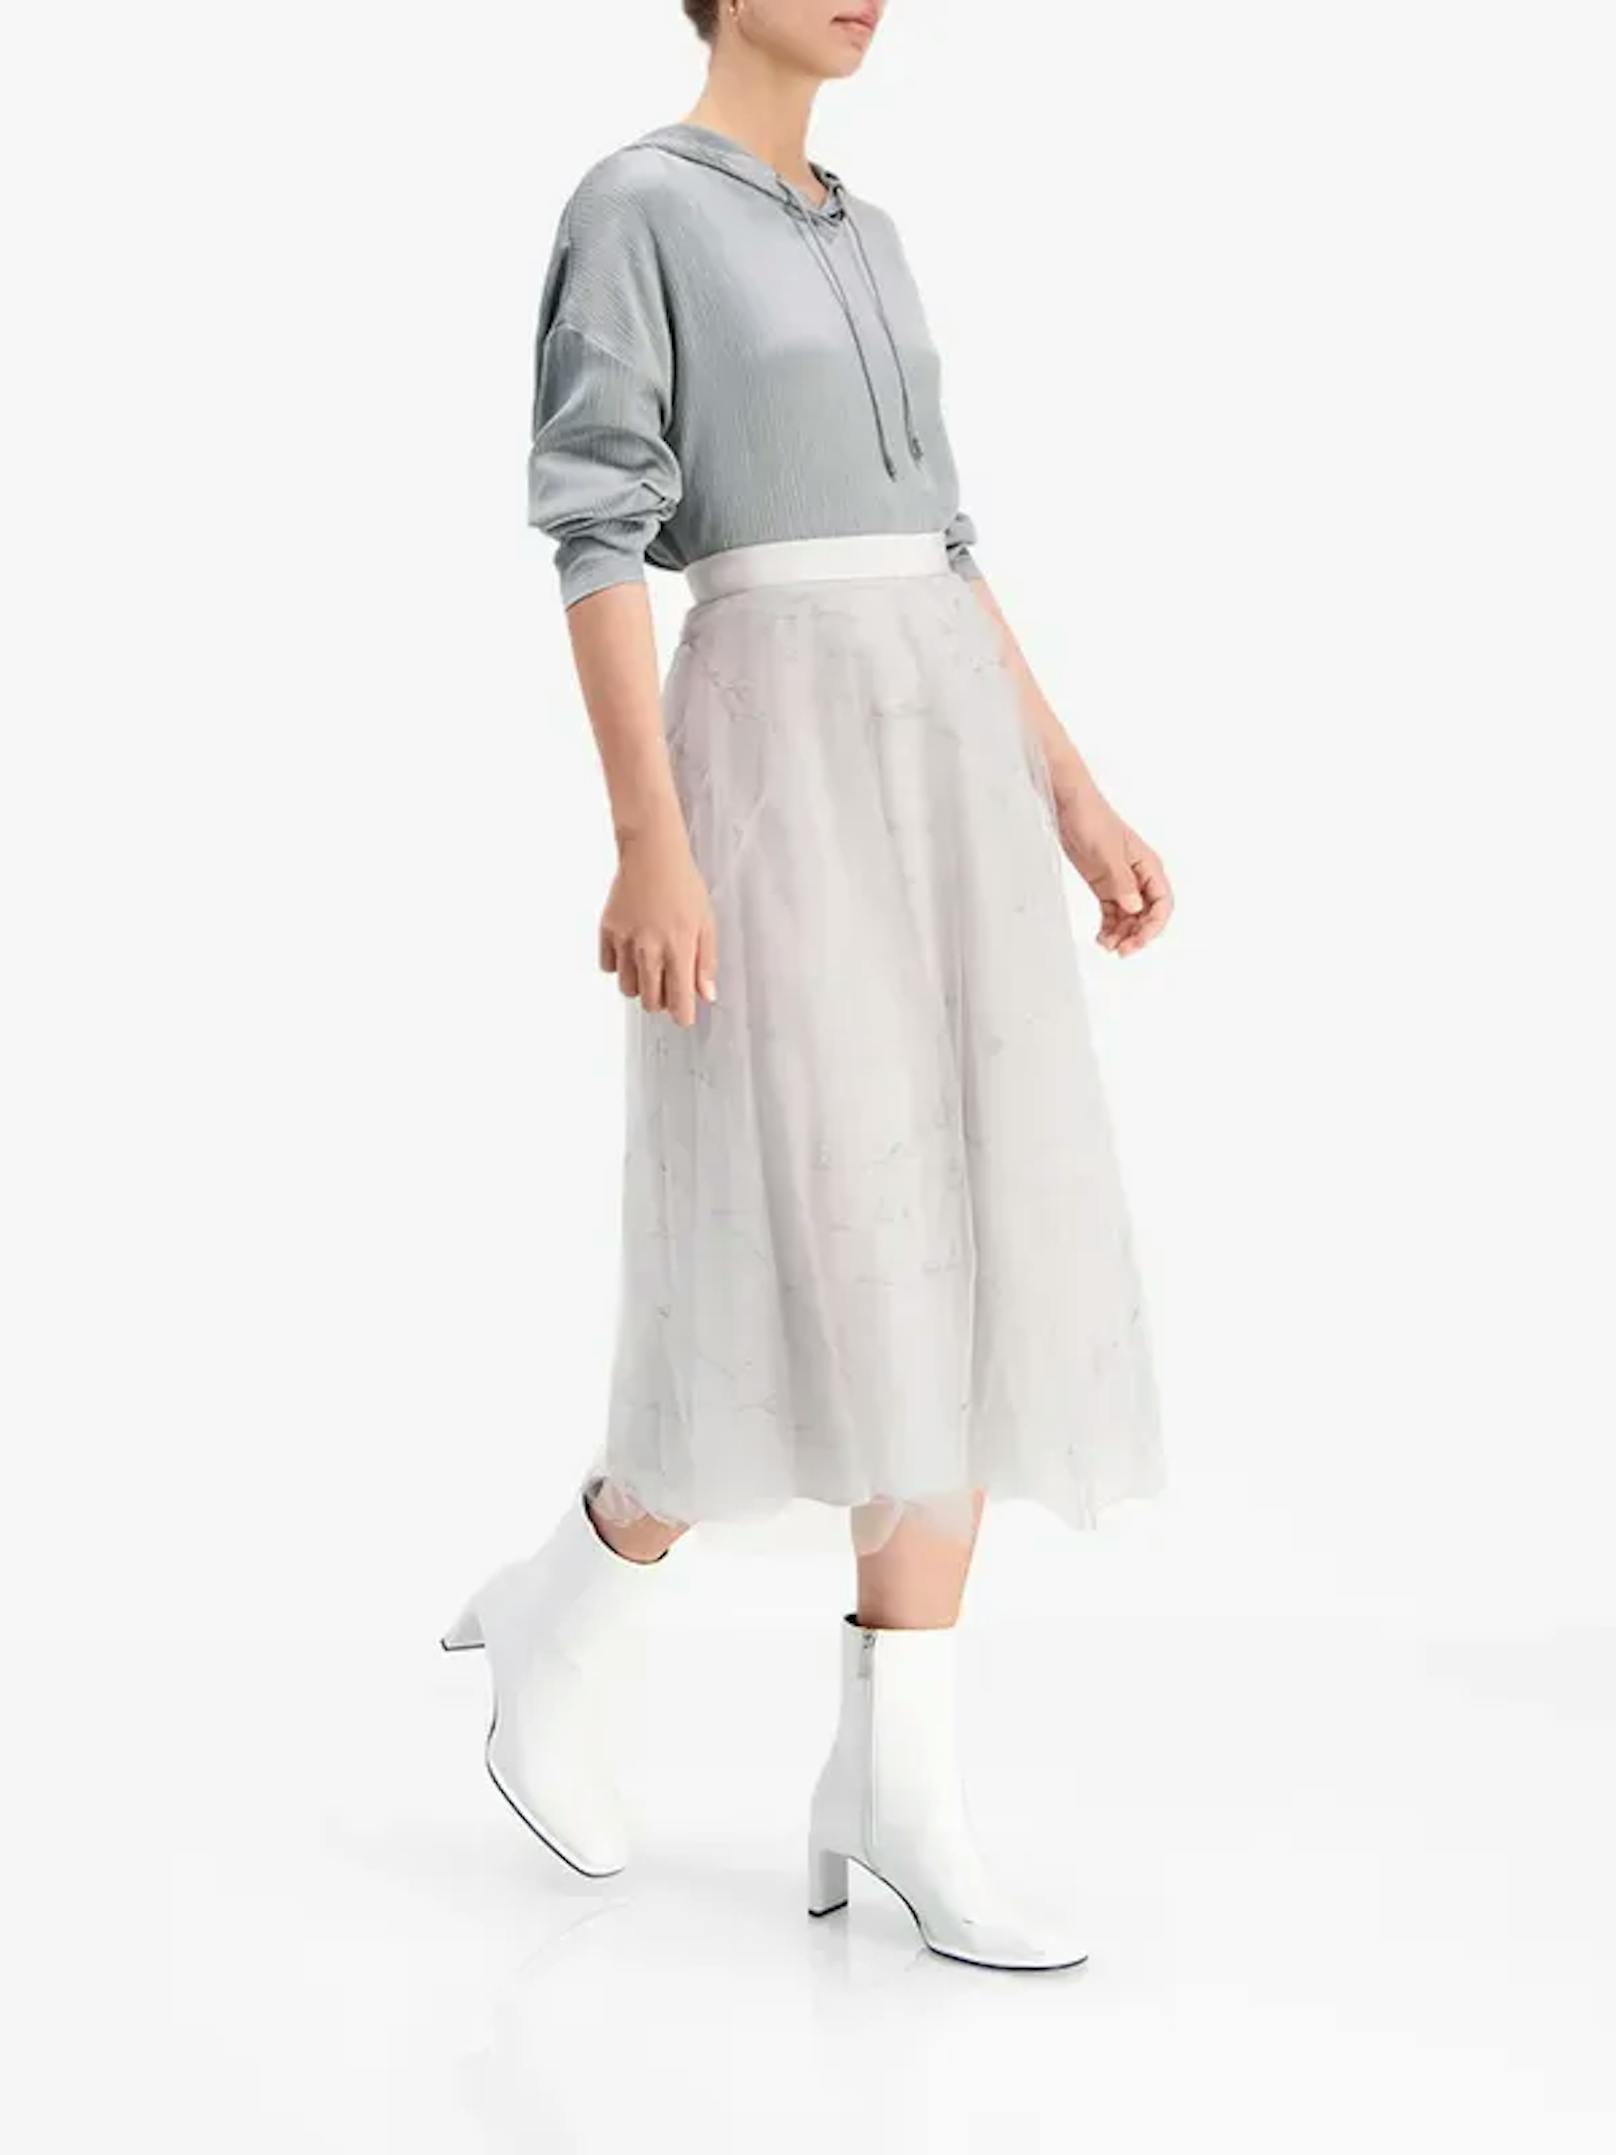 Ganz wie Carrie Bradshaw siehst du mit diesem Taillenrock aus Tüll wie eine Modeikone aus.